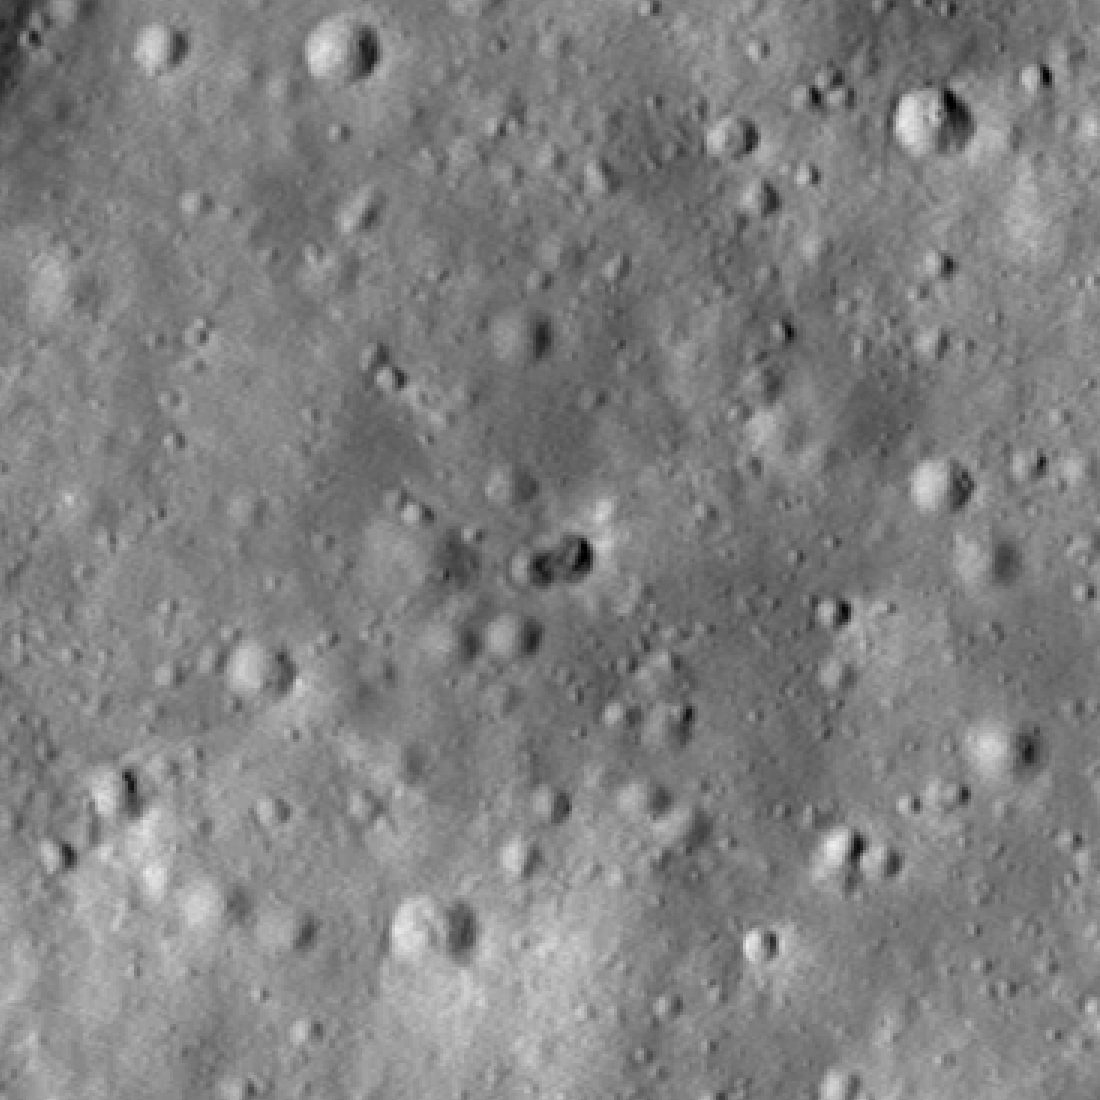 Emplacement des points orbitaux lunaires de la NASA pour un mystérieux impact de fusée